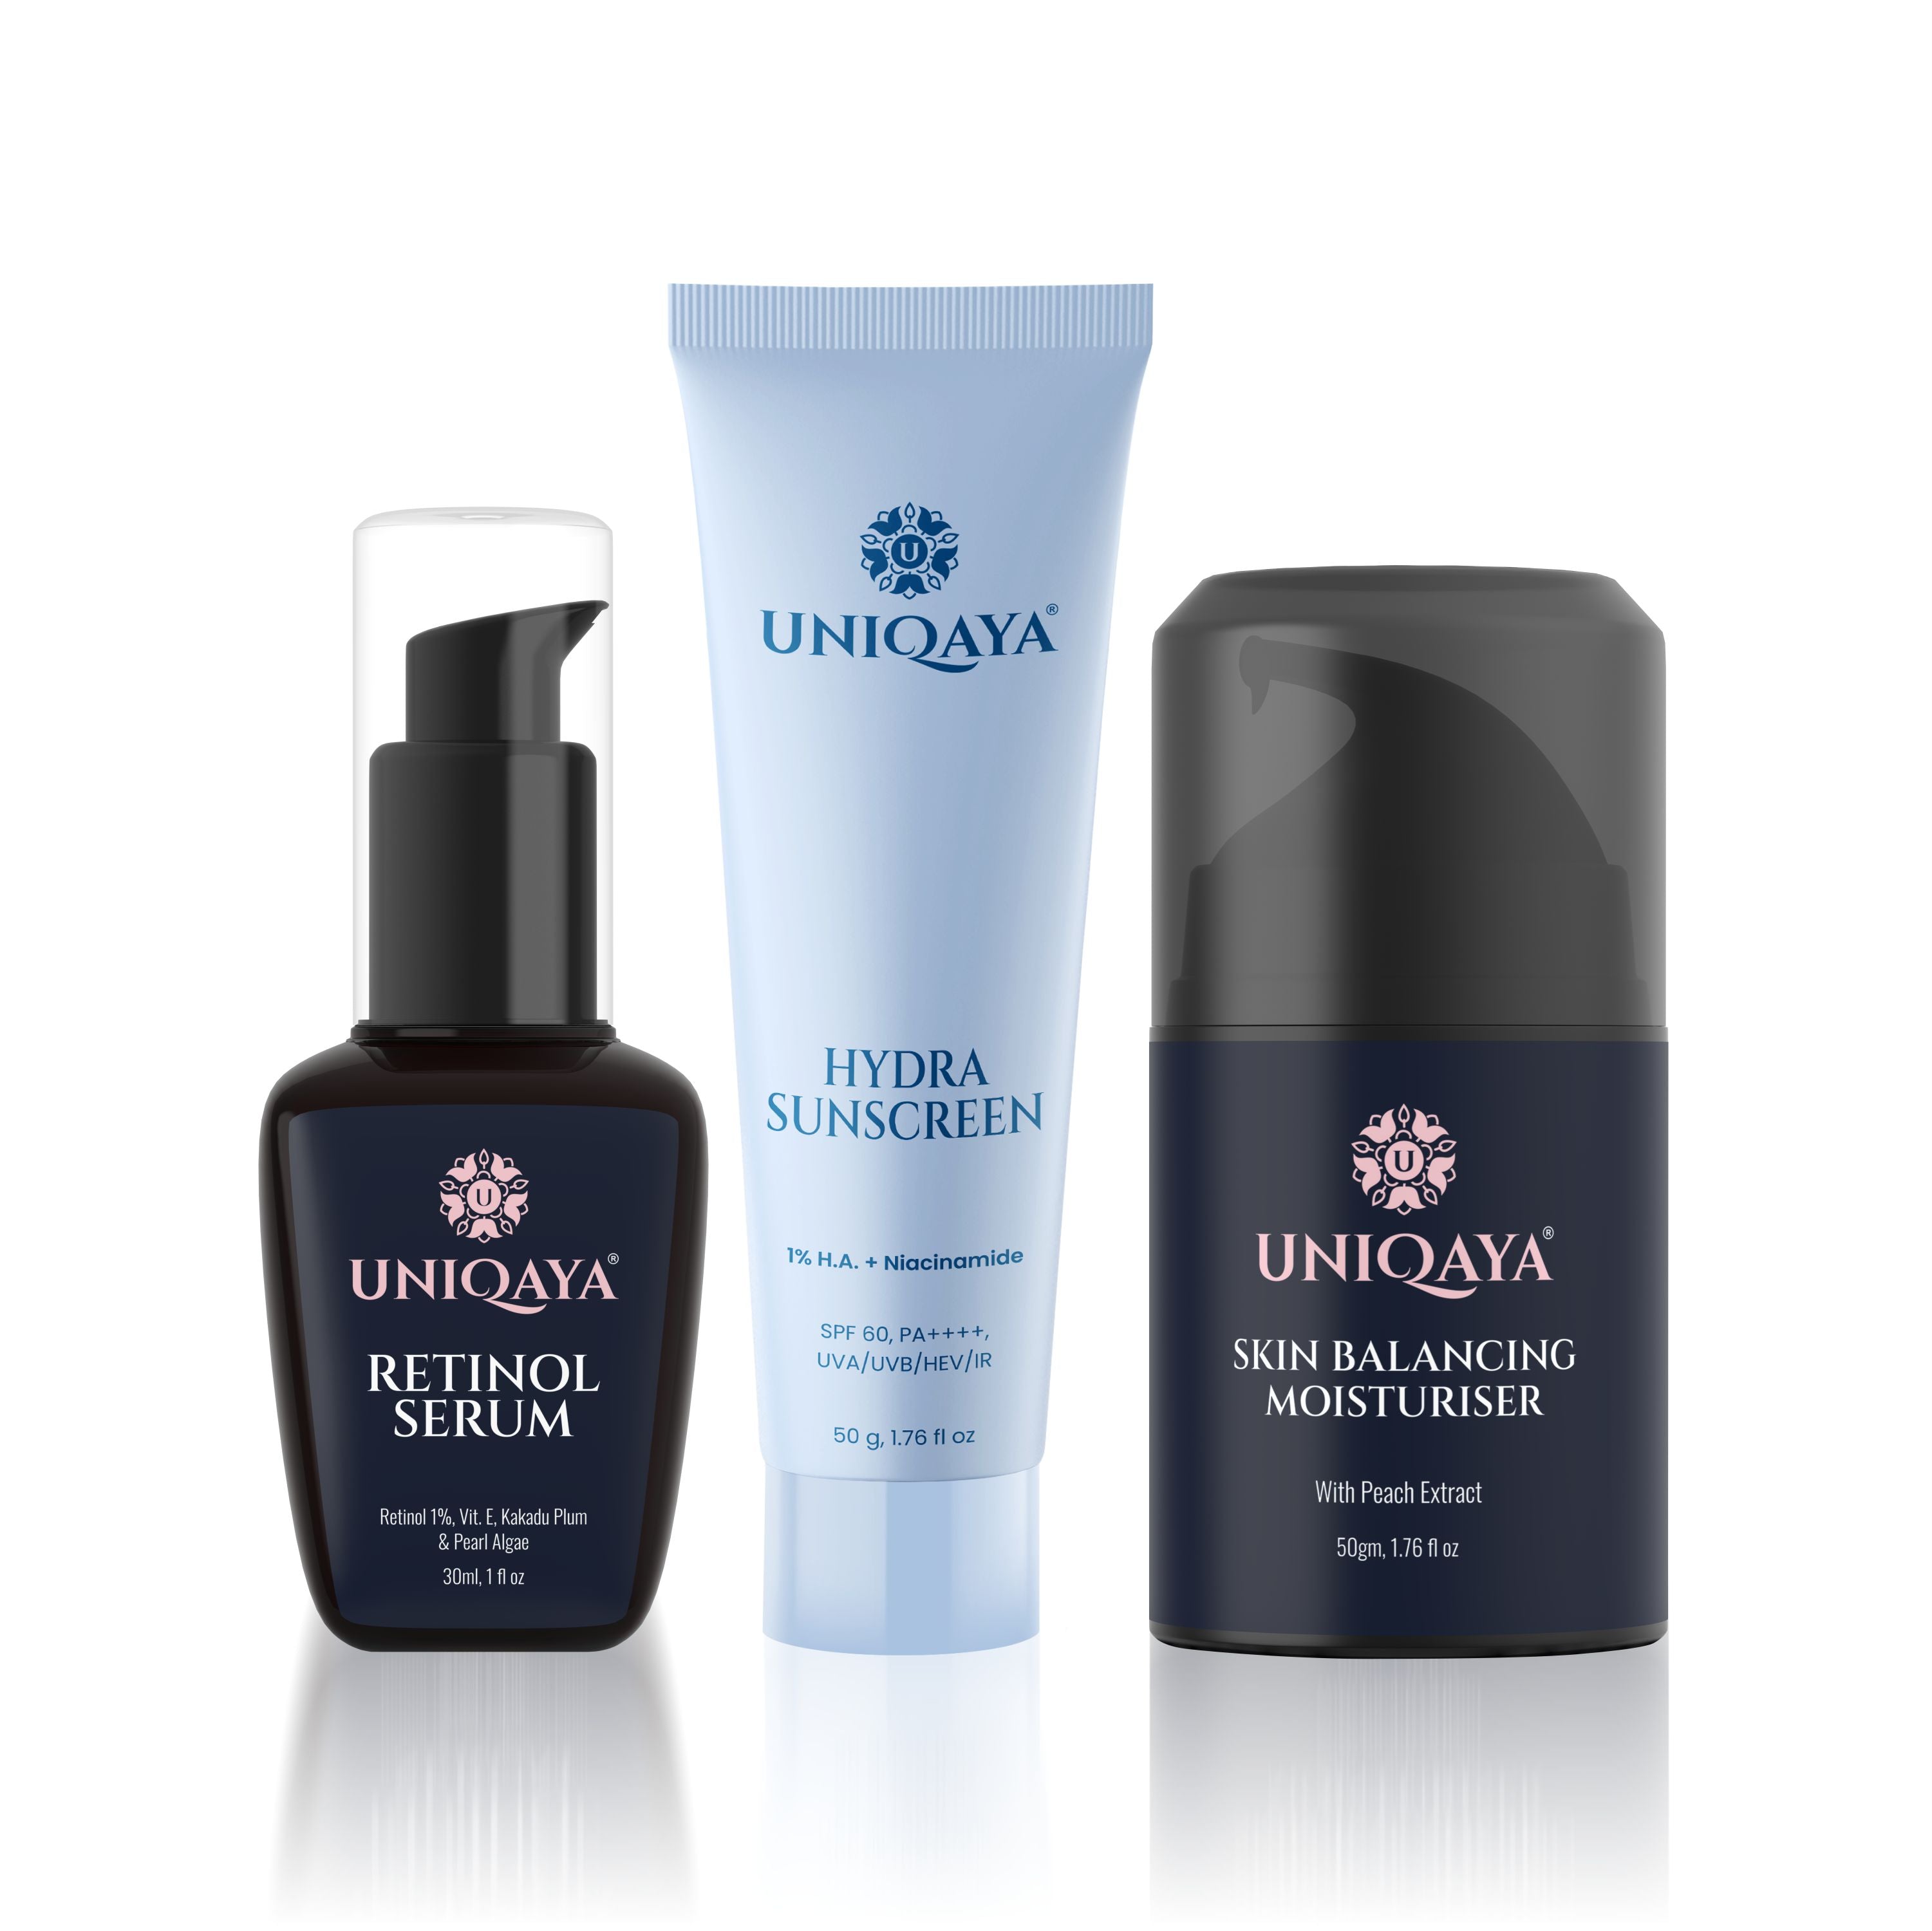 Retinol Serum, Skin Balancing Moisturiser, and Hydra Sunscreen | Skin Care Combo Pack